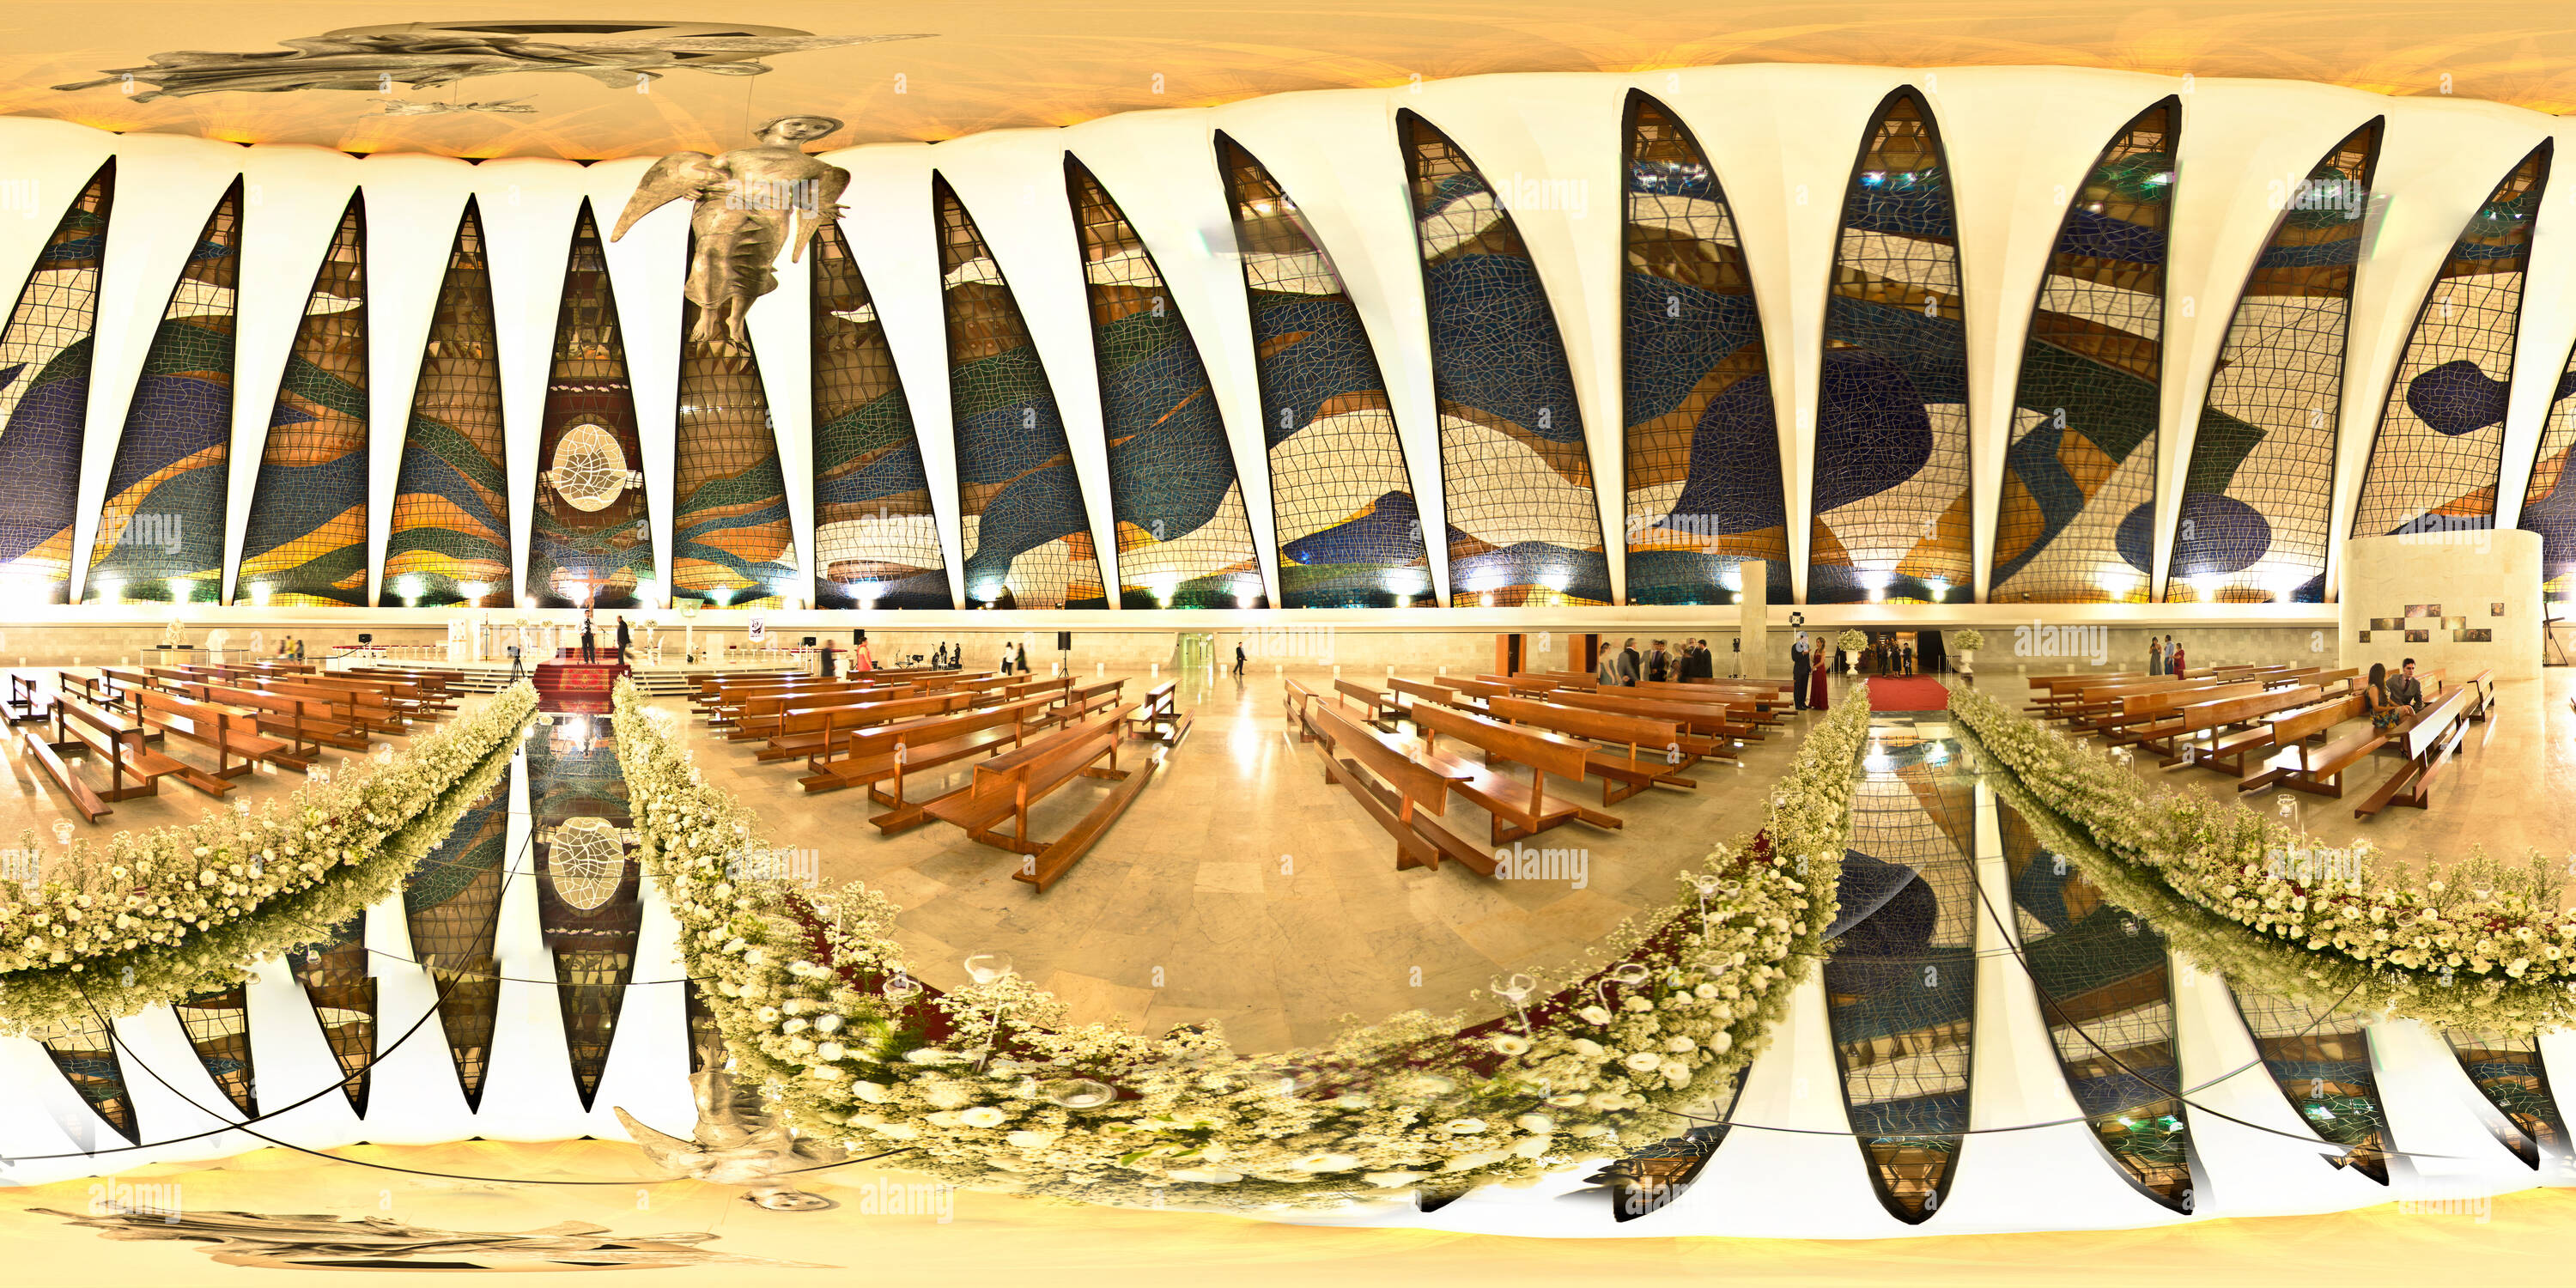 Vista panorámica en 360 grados de Catedral Metropolitana de Brasília - vista interior